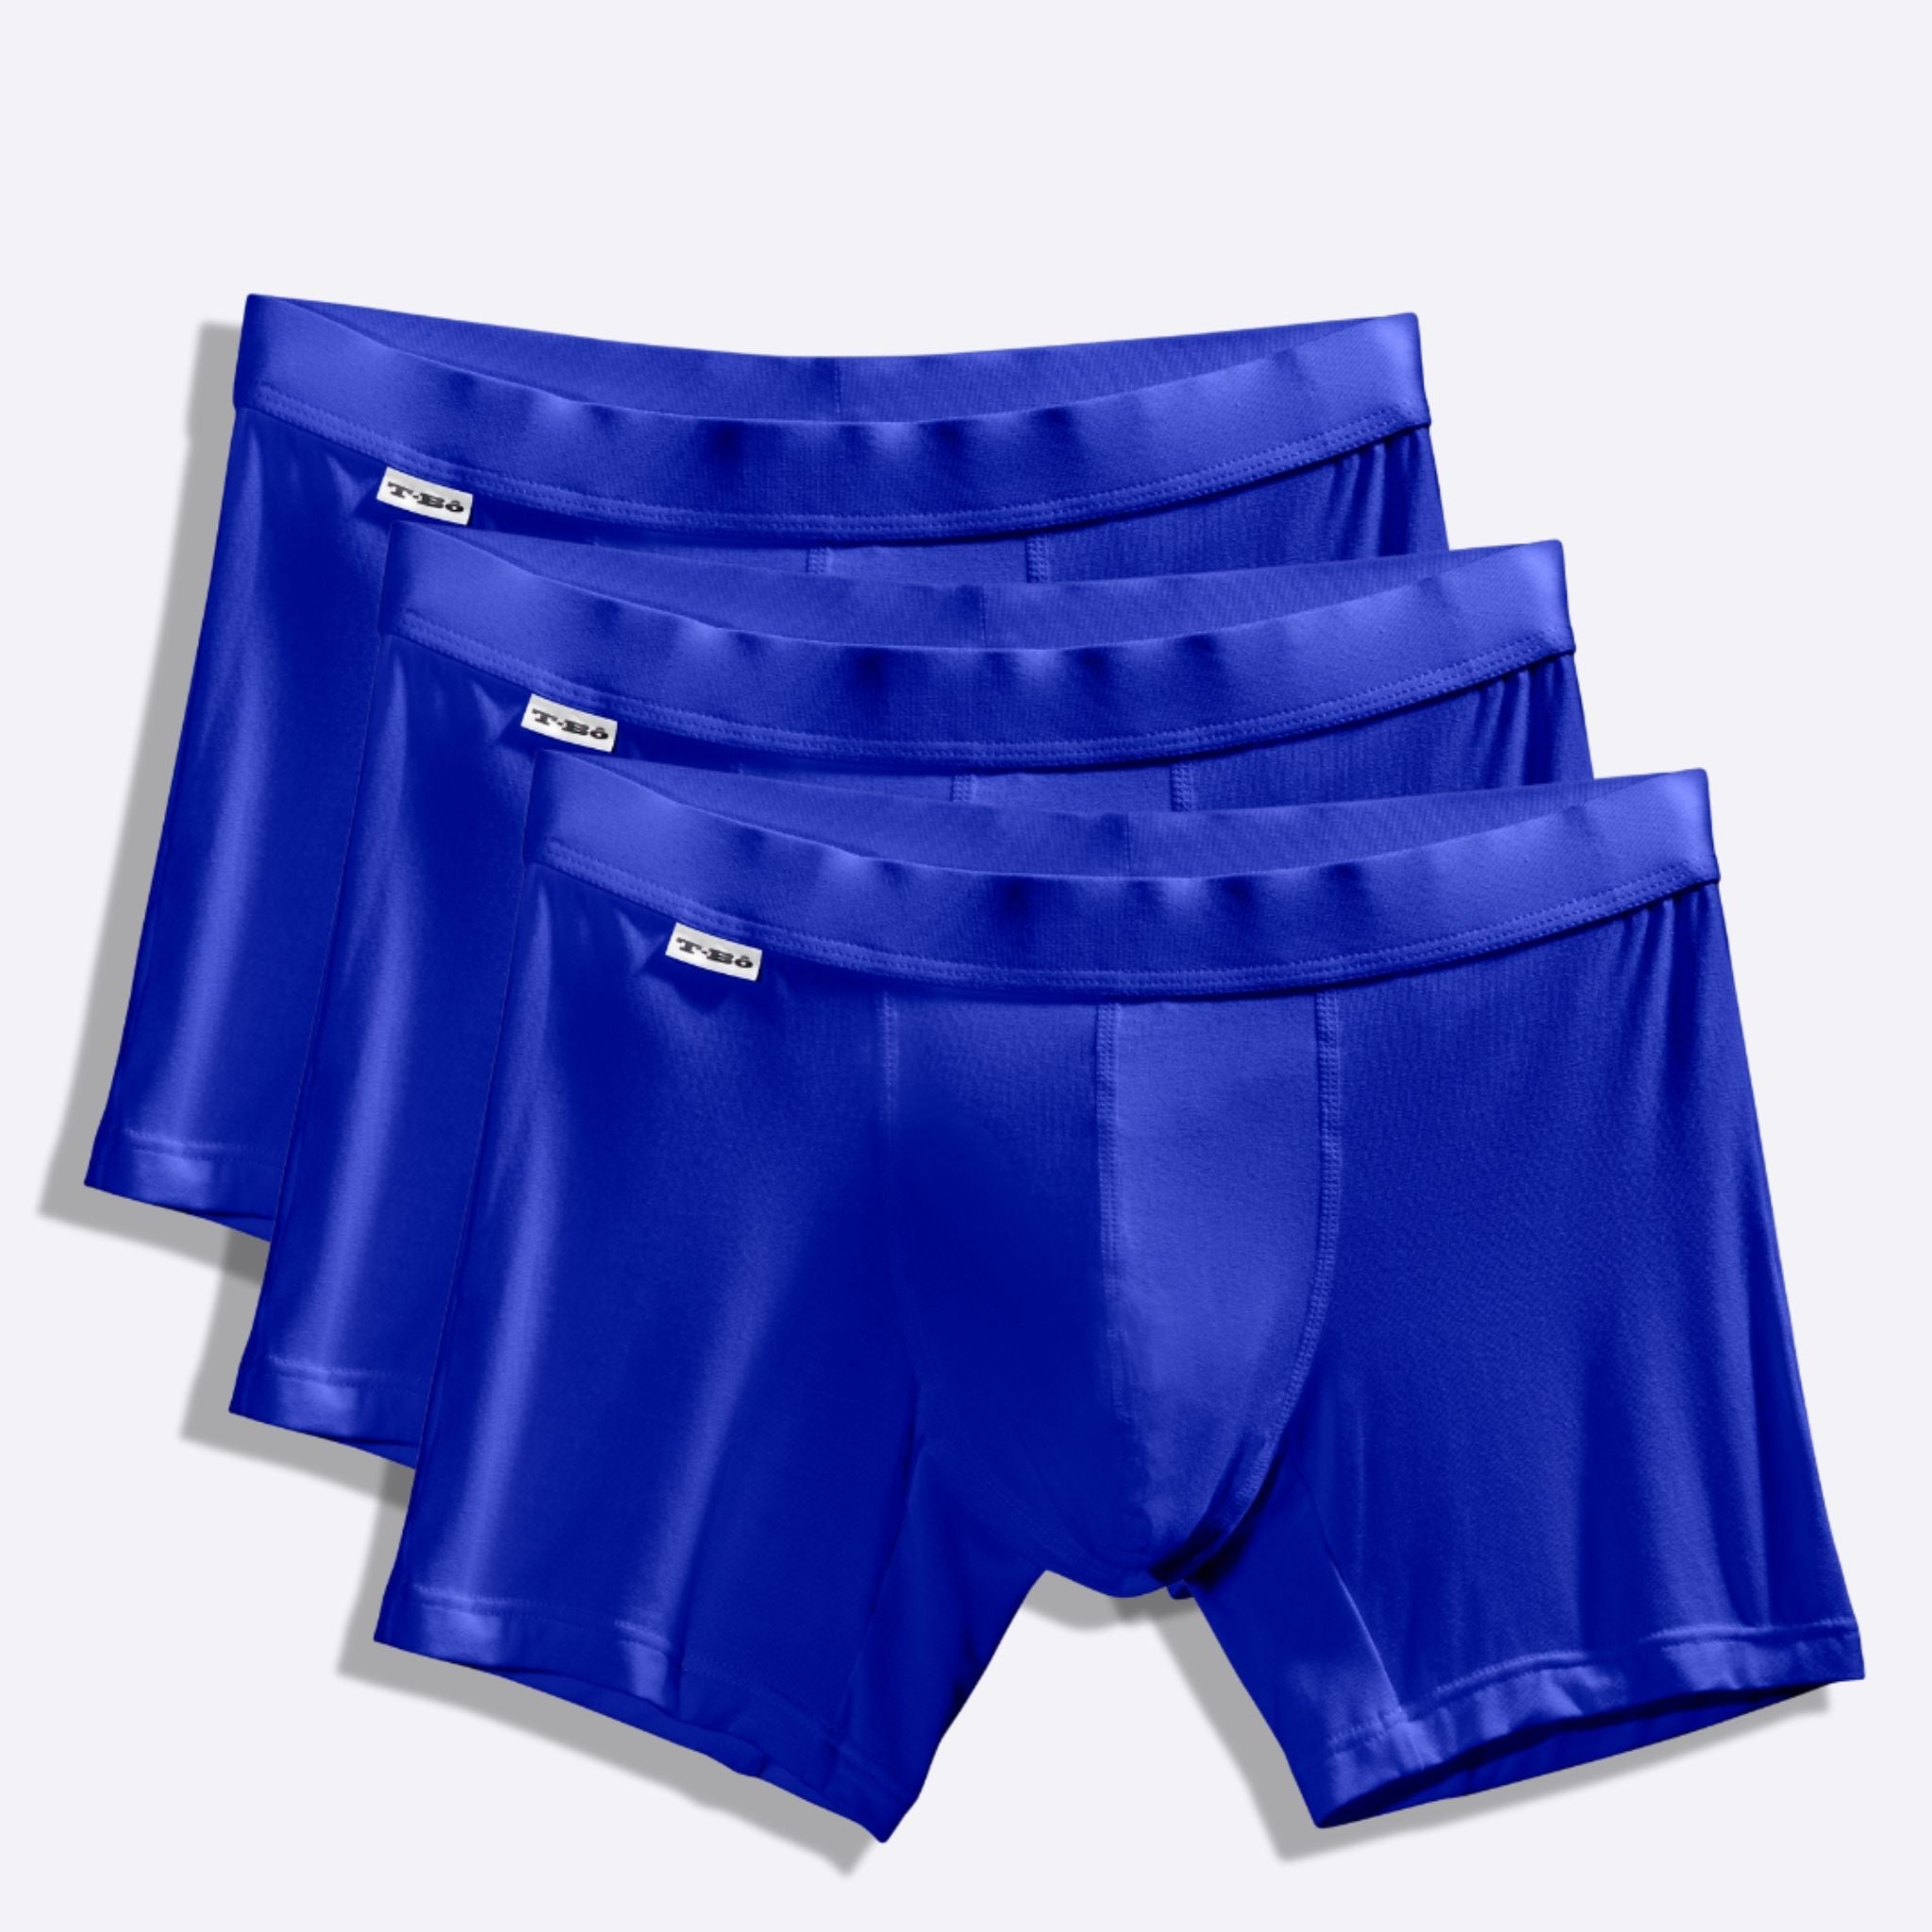 Vince Camuto Men's Cotton Stretch Boxer Brief Multi-Pack, 3Pk Estate  Blue/Checkerboard/Estate Blue, Large, Estate Blue/Checkerboard/Estate Blue,  L price in UAE,  UAE